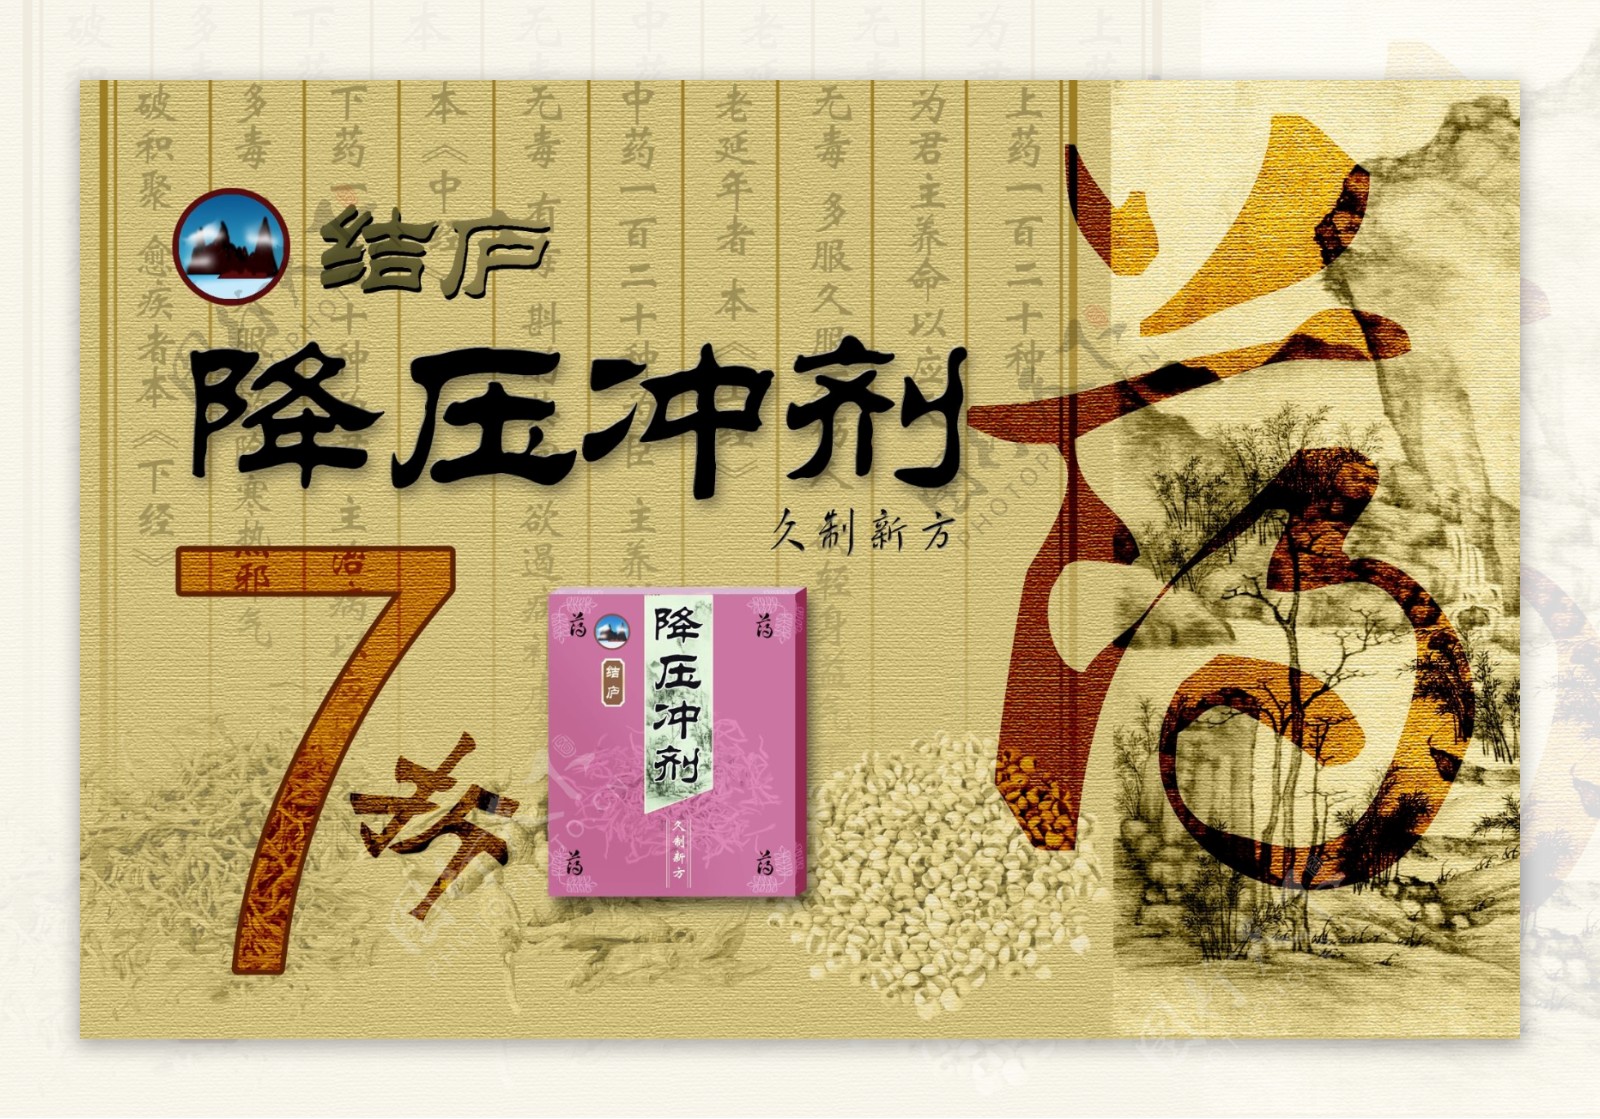 降压冲剂中国古典广告PSD素材